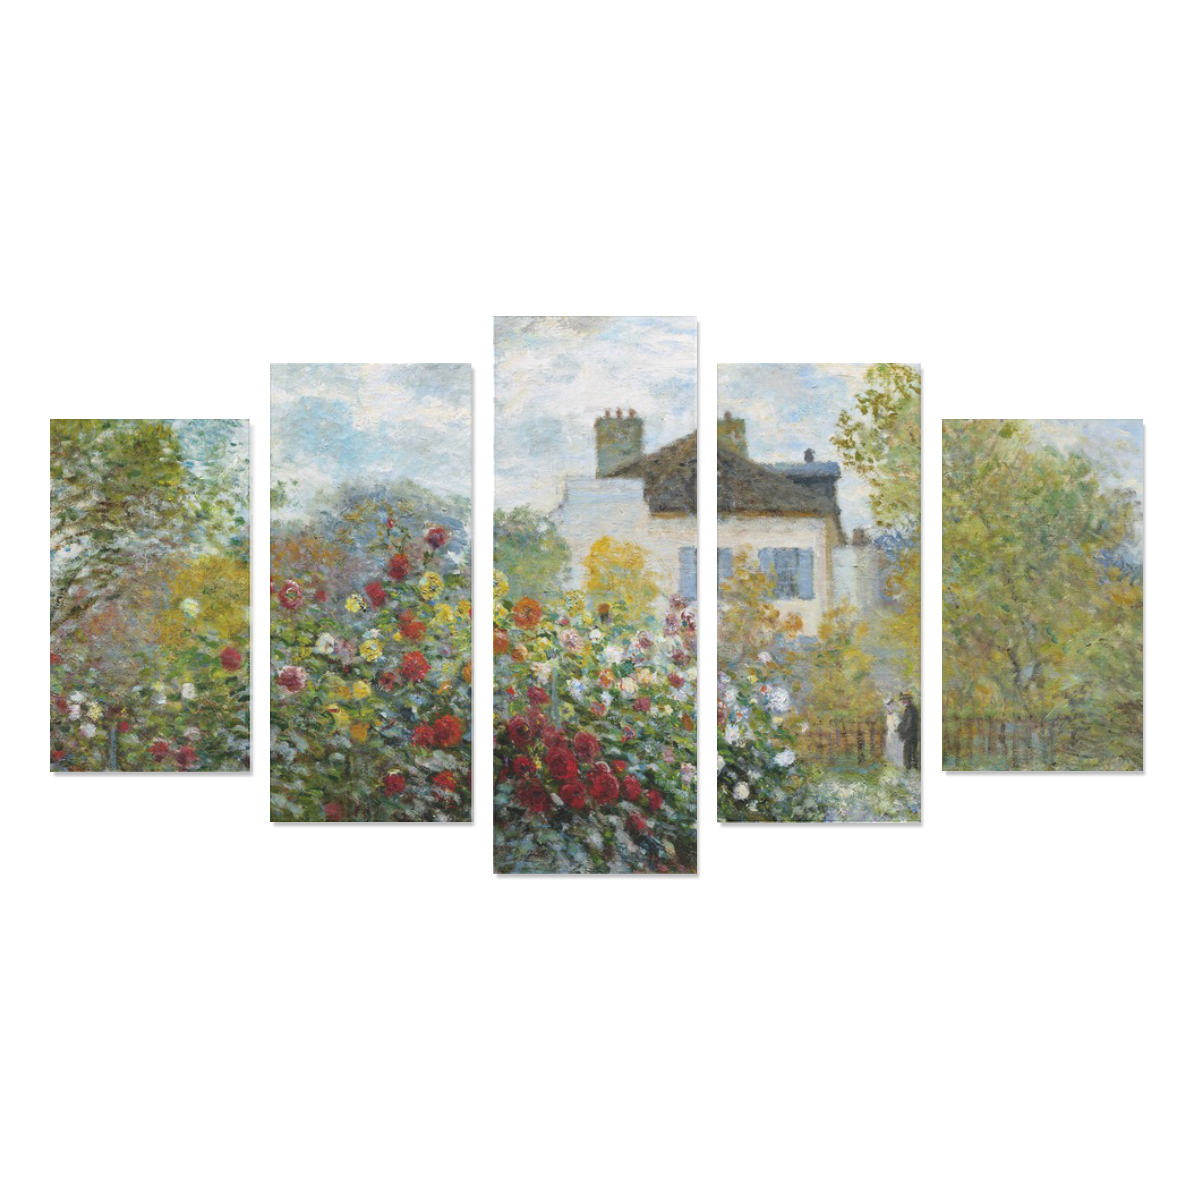 Monet Artist's Garden Argenteuil Floral Landscape Canvas Print Sets A (No Frame)